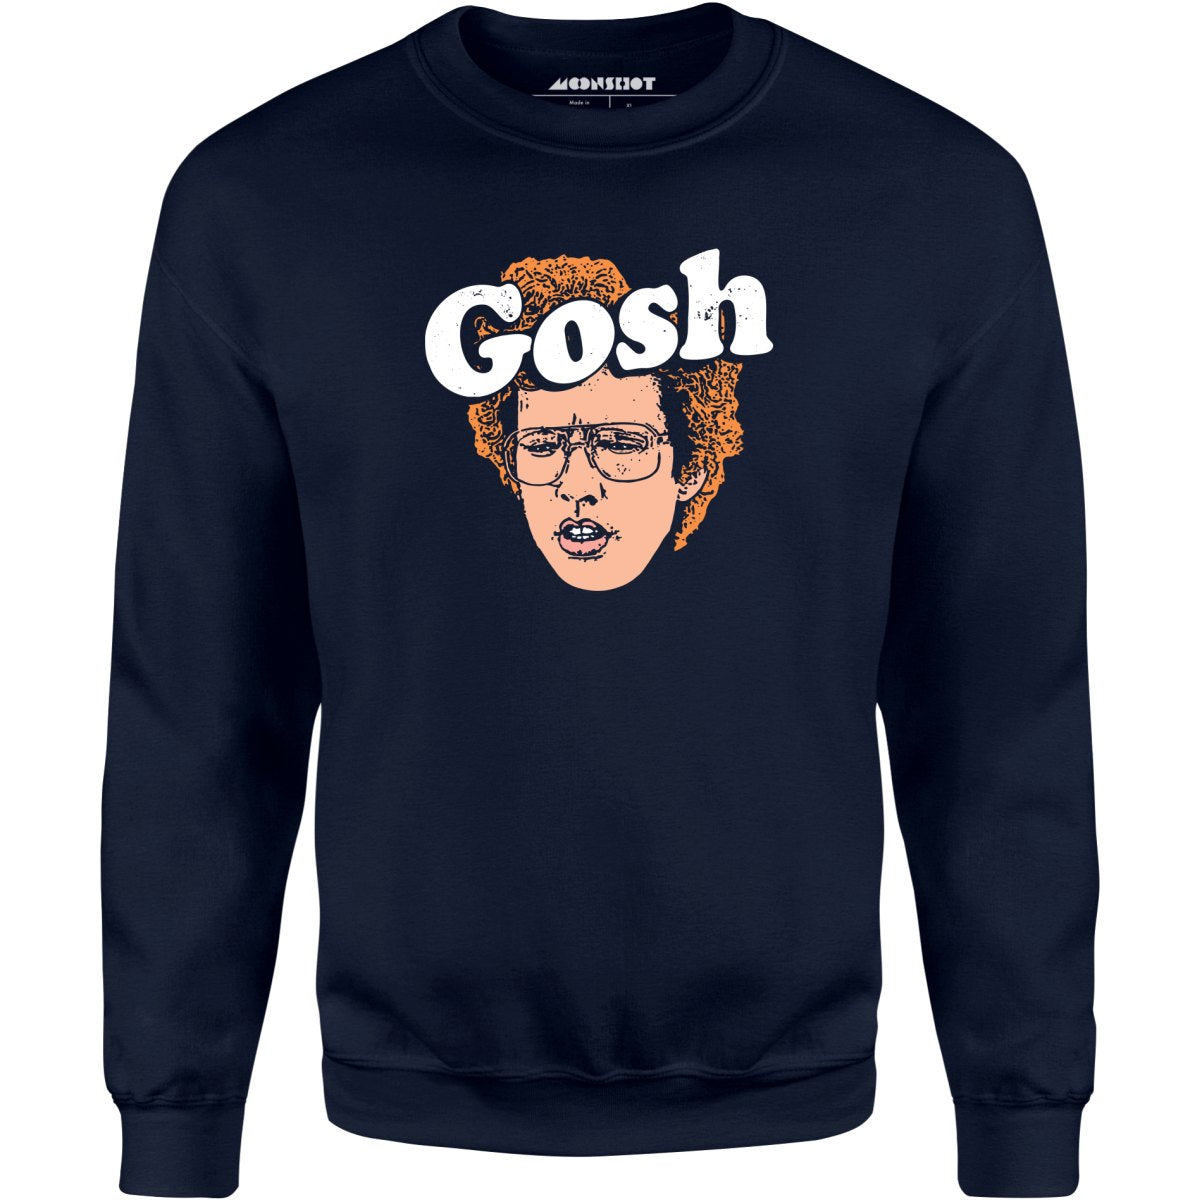 Gosh - Unisex Sweatshirt